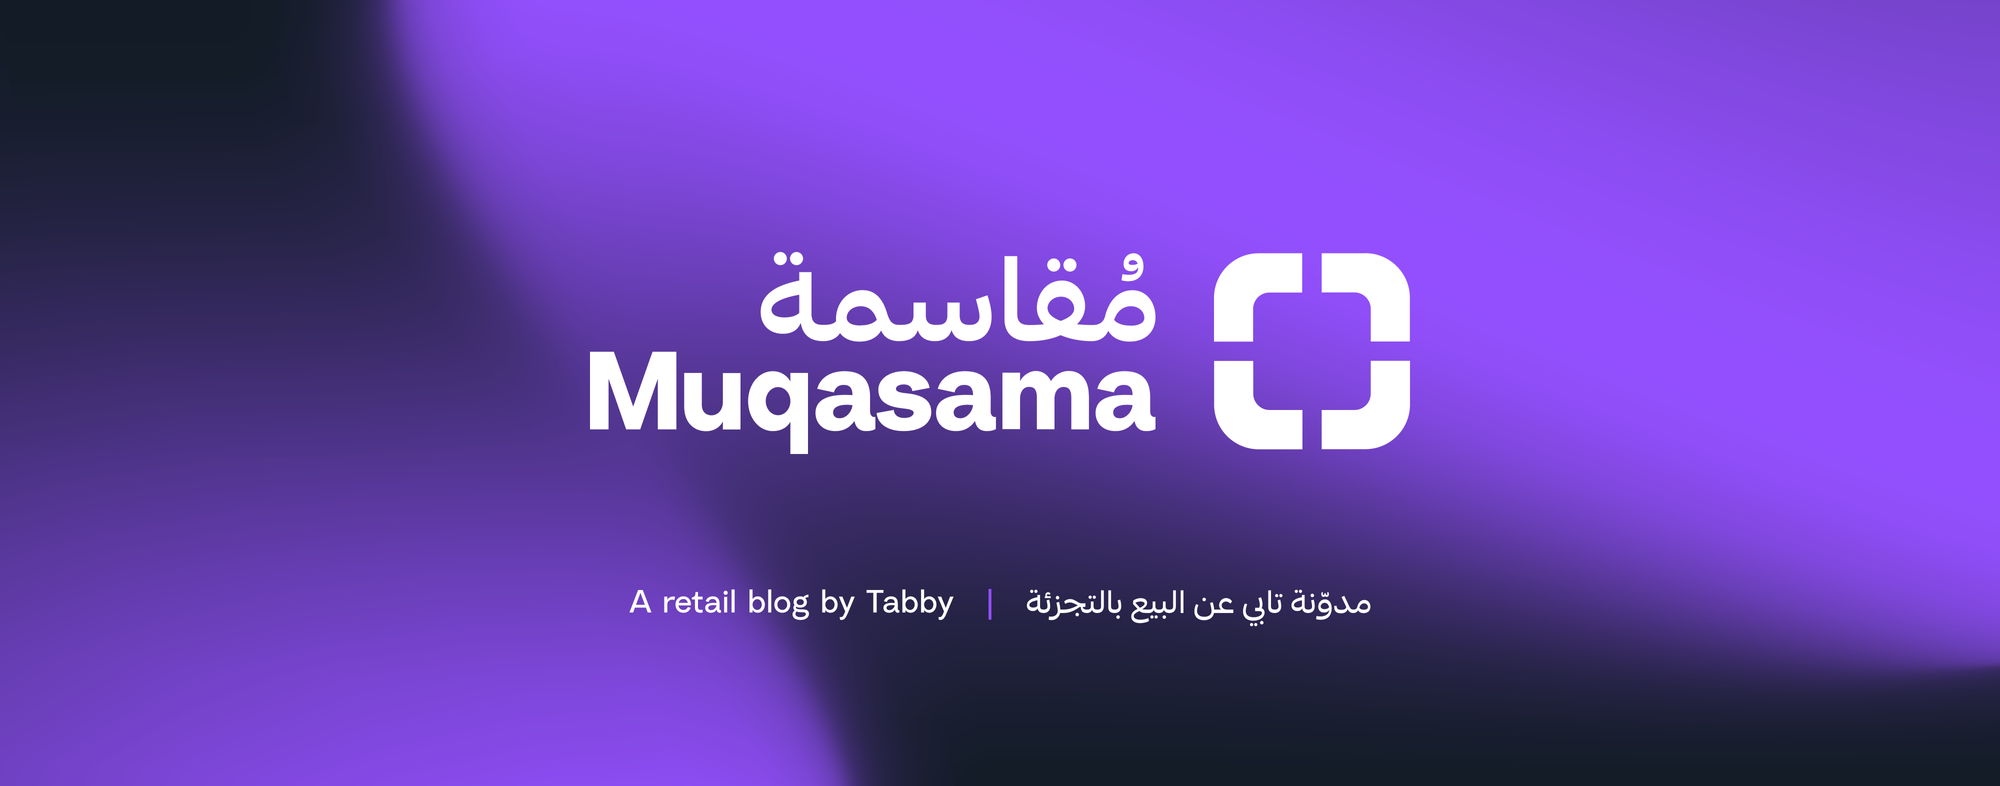 Muqasama - A retail blog by Tabby